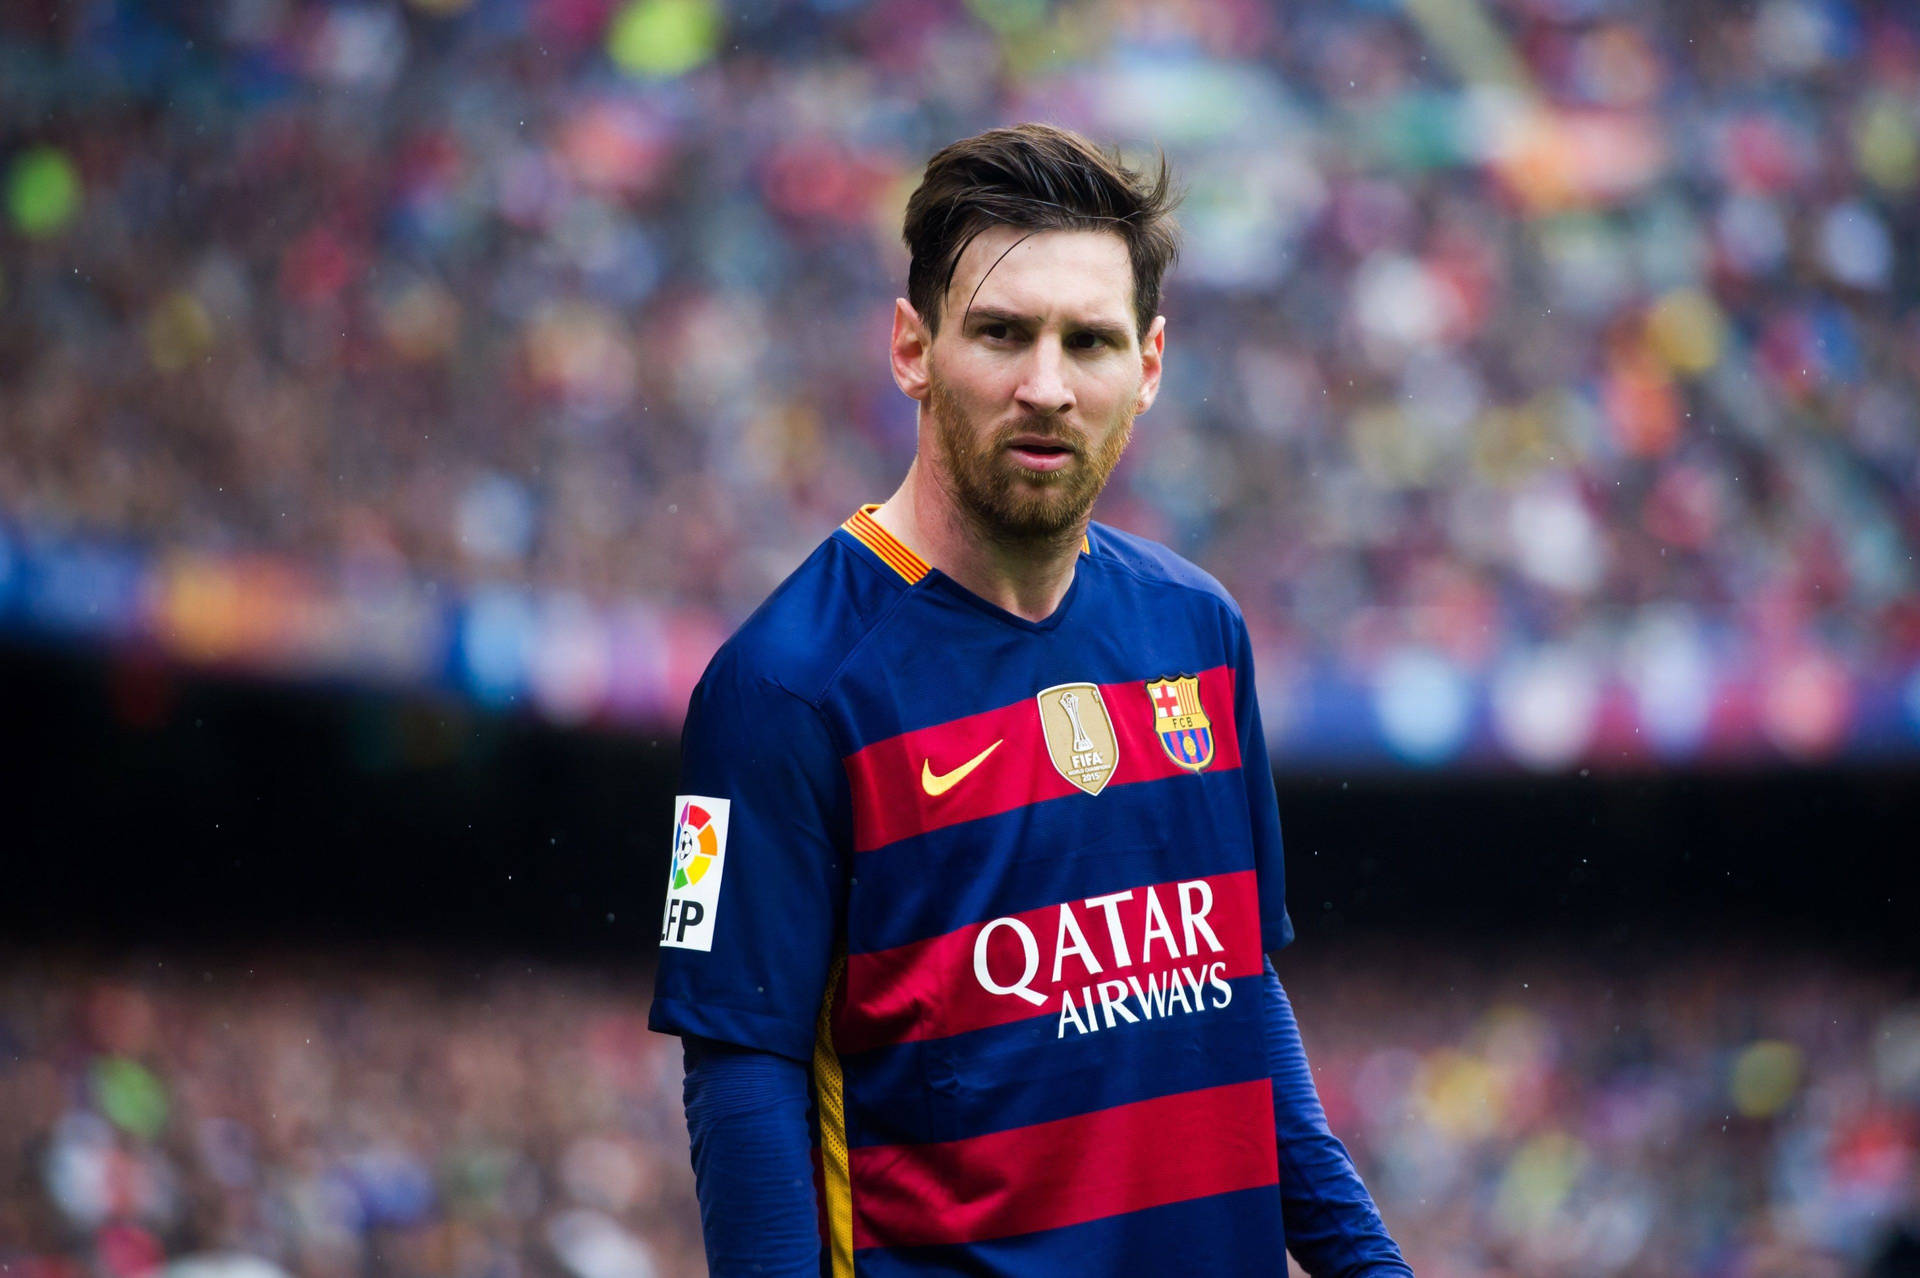 Geni fodboldspiller Lionel Messi Wallpaper